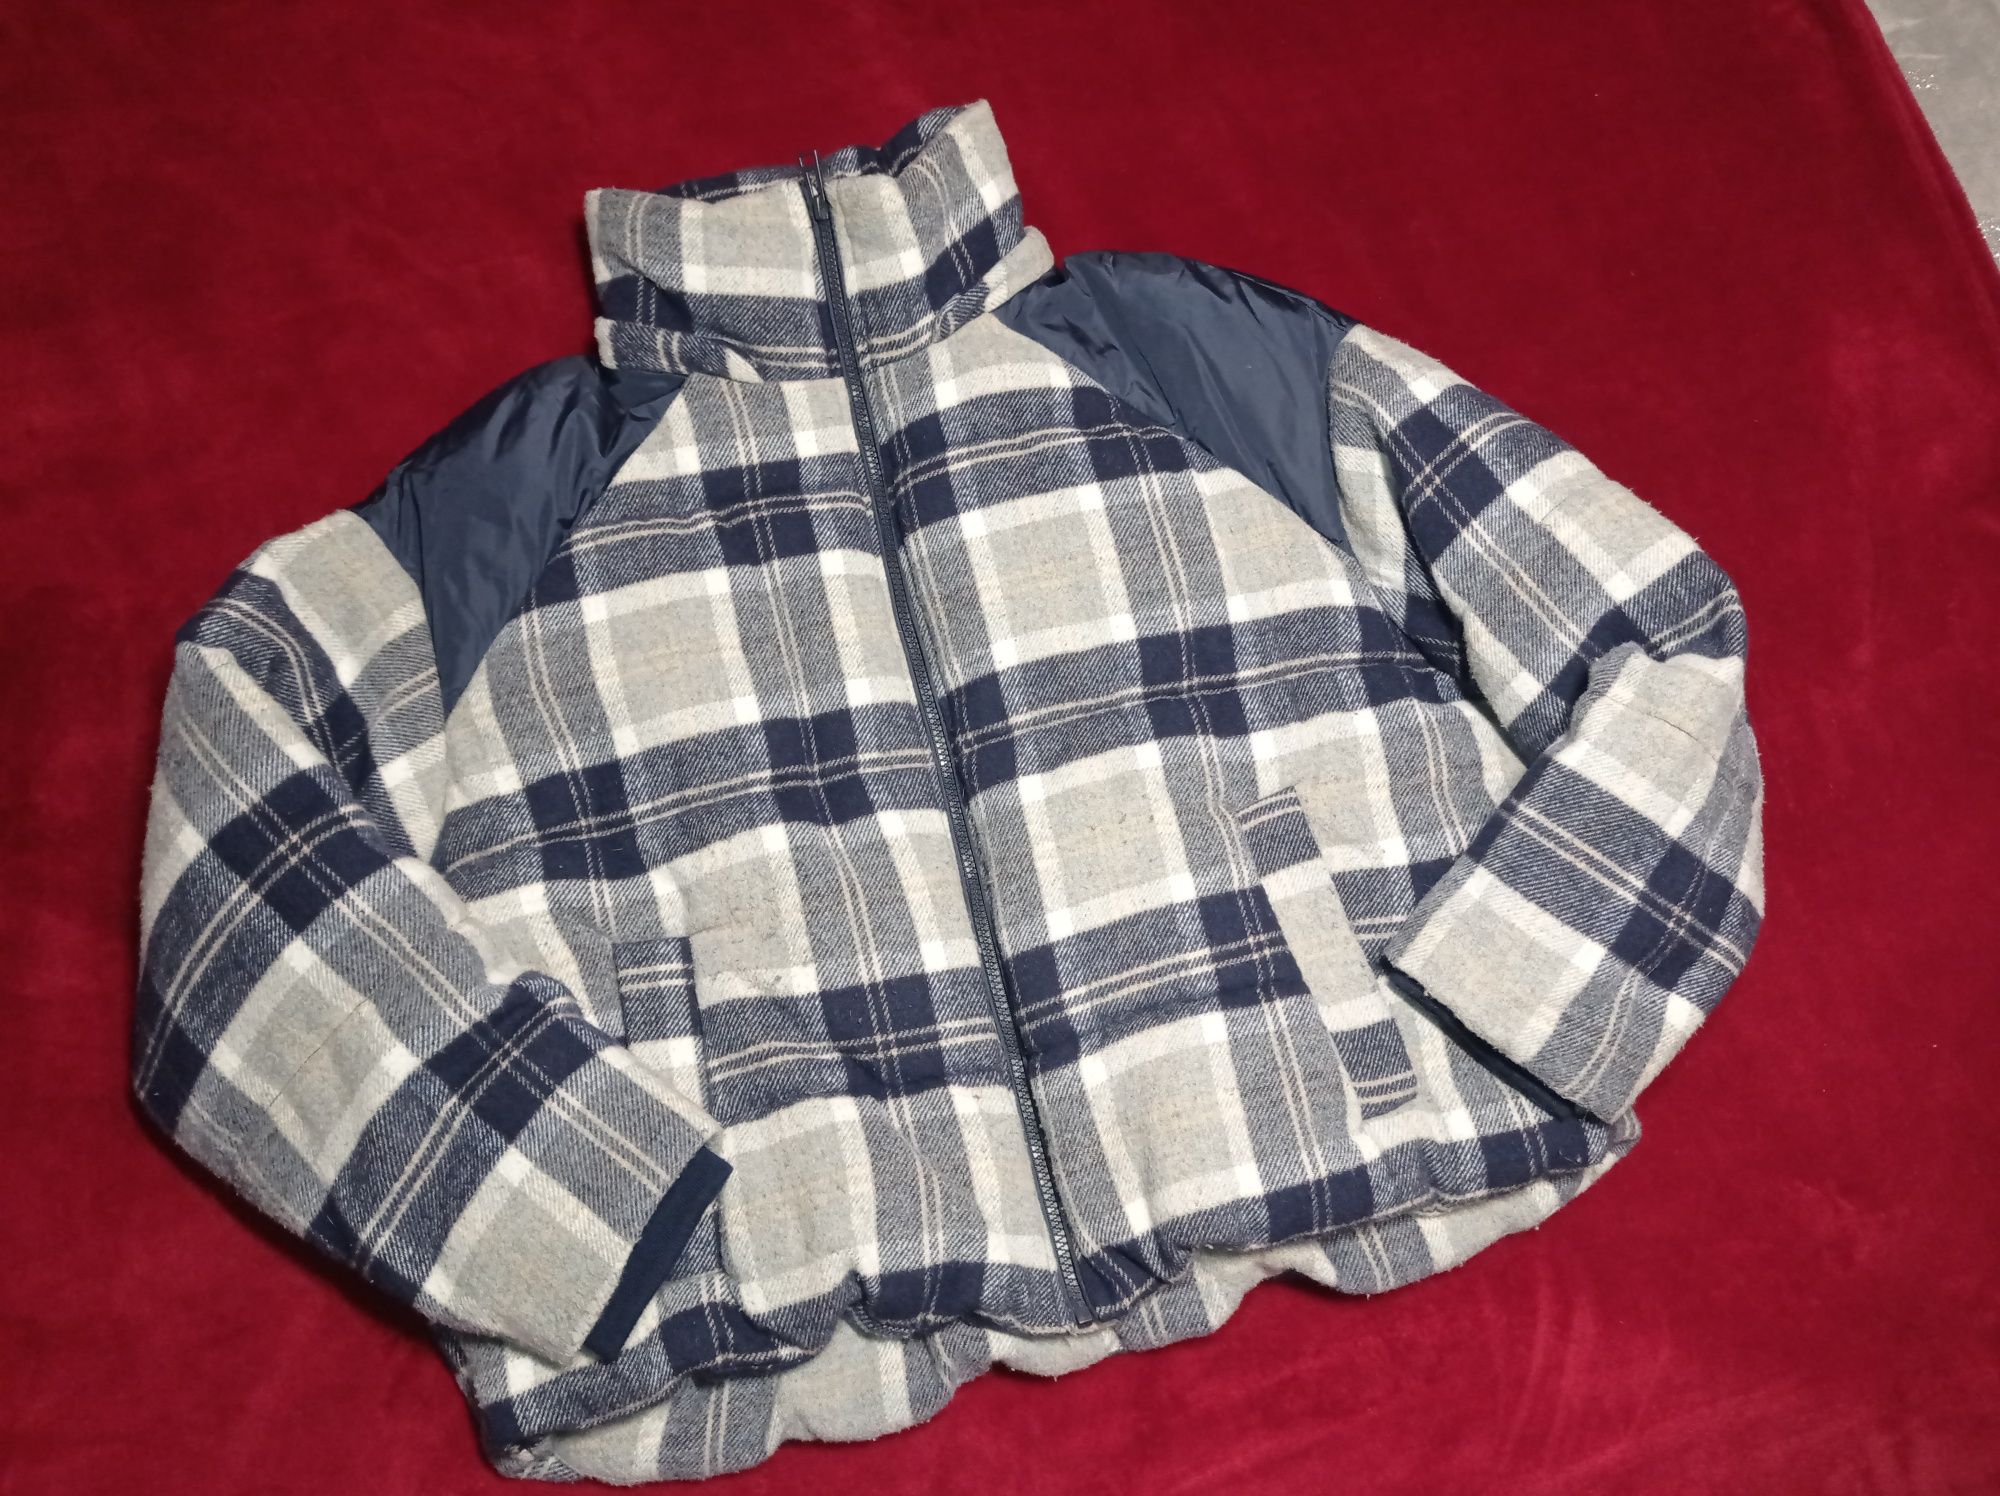 Kurtka Zara rozmiar L 40 w kratkę ciepła kratę koszulowa szara granat